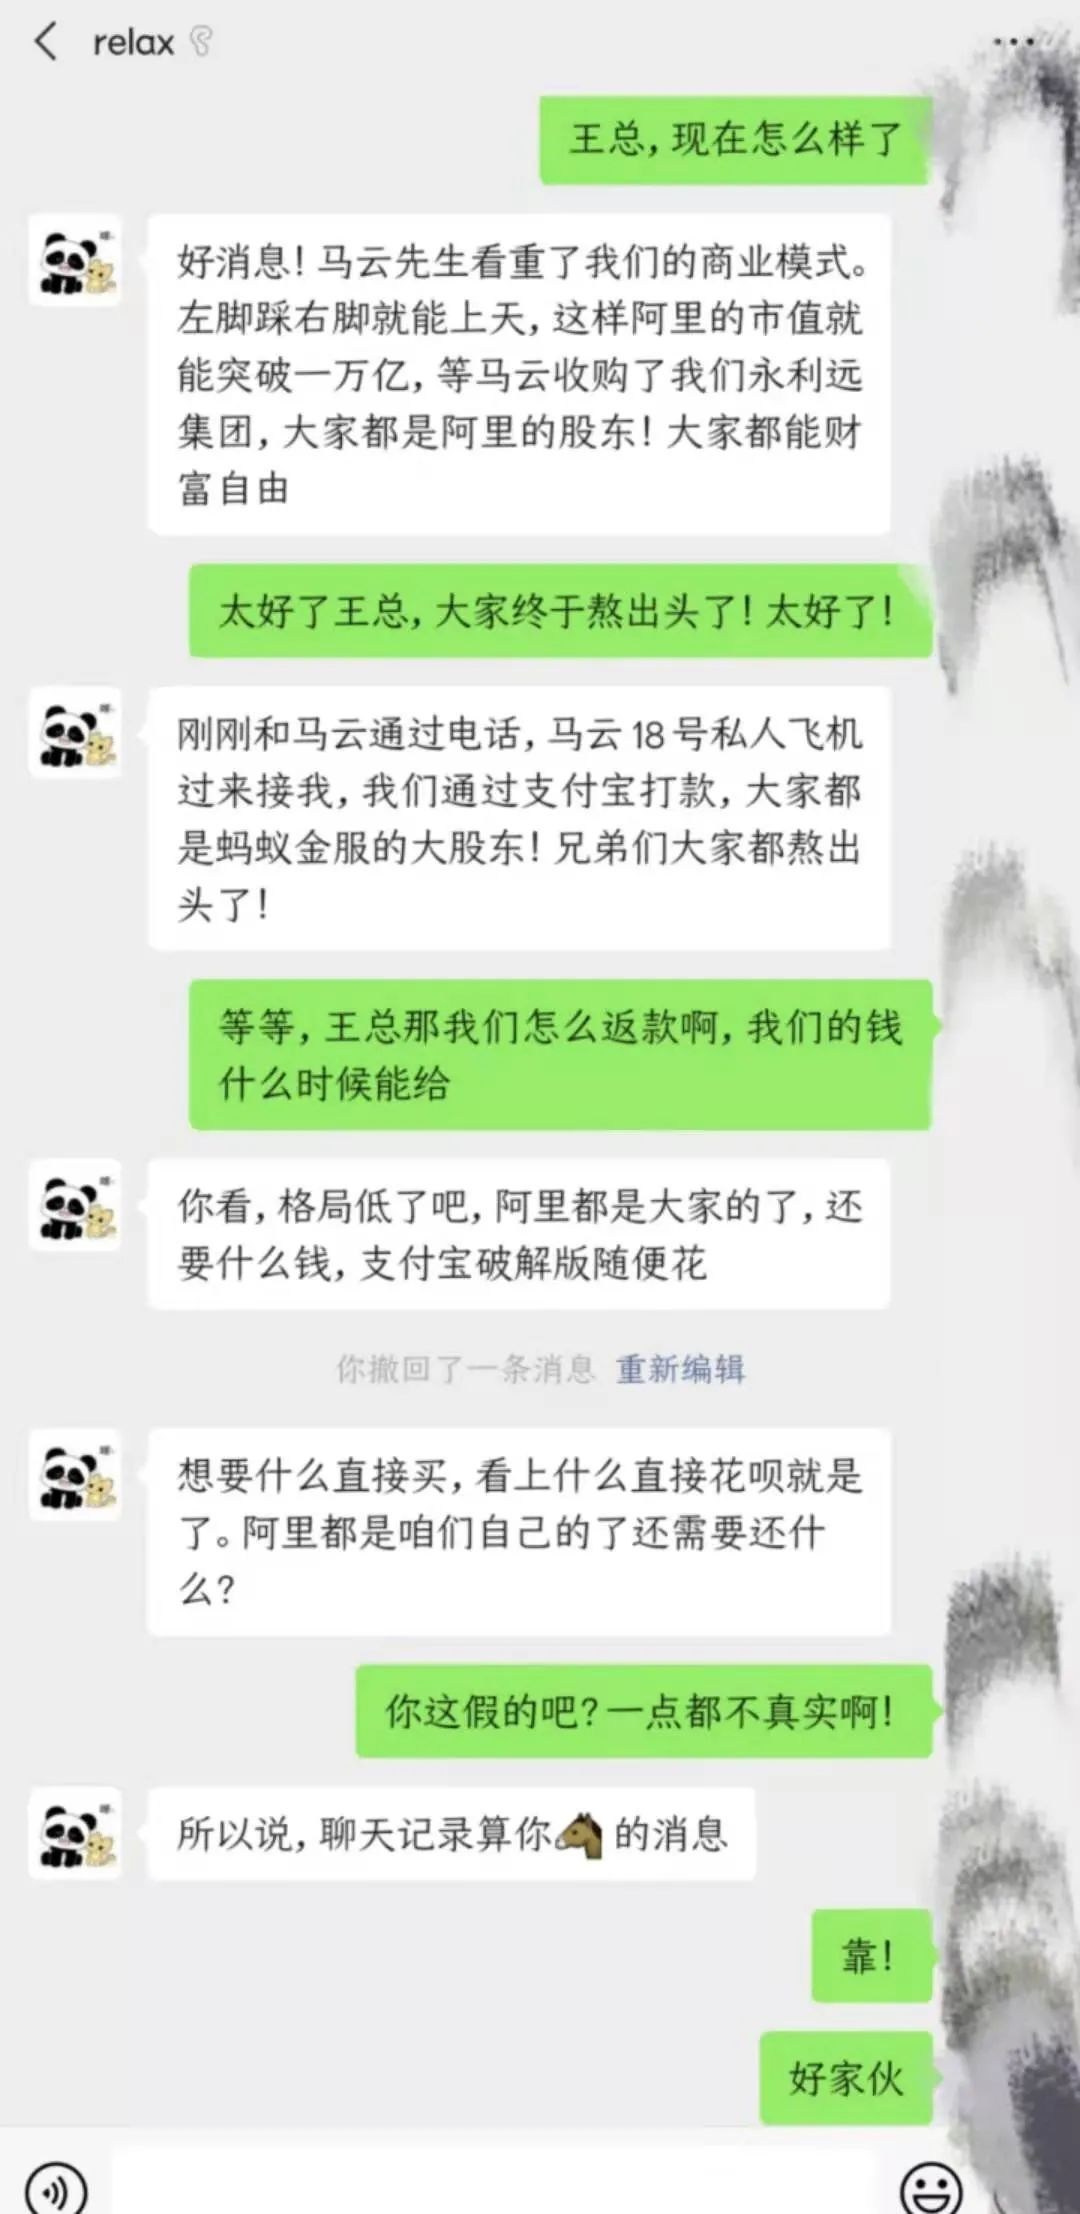 深圳市永利远实业集团有限公司因涉嫌传销被公安通报(图4)